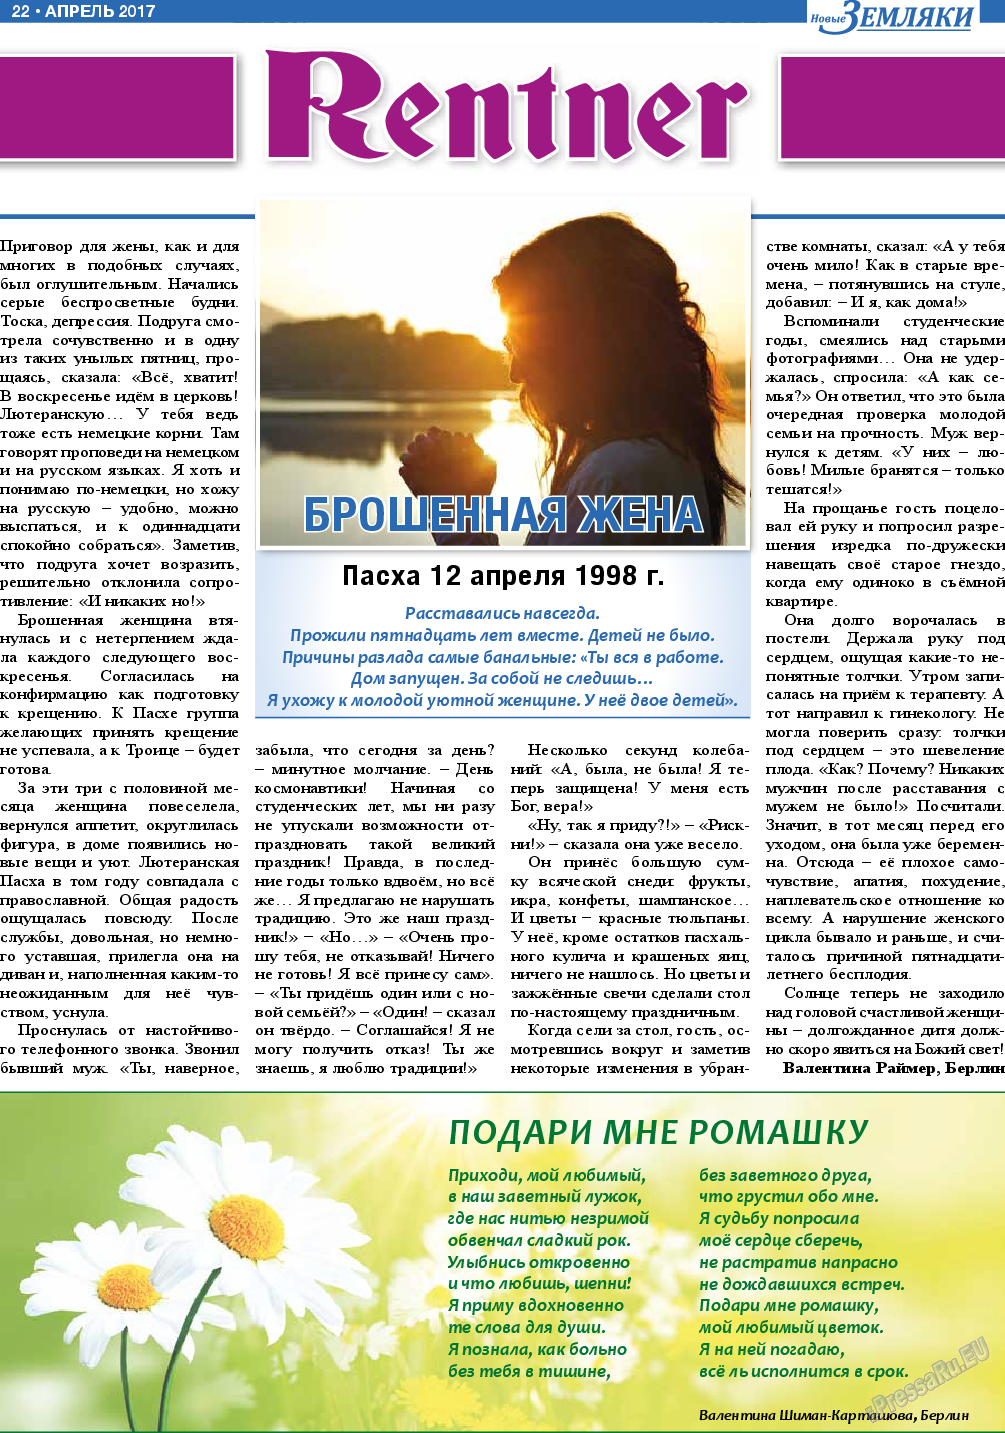 Новые Земляки (газета). 2017 год, номер 4, стр. 22